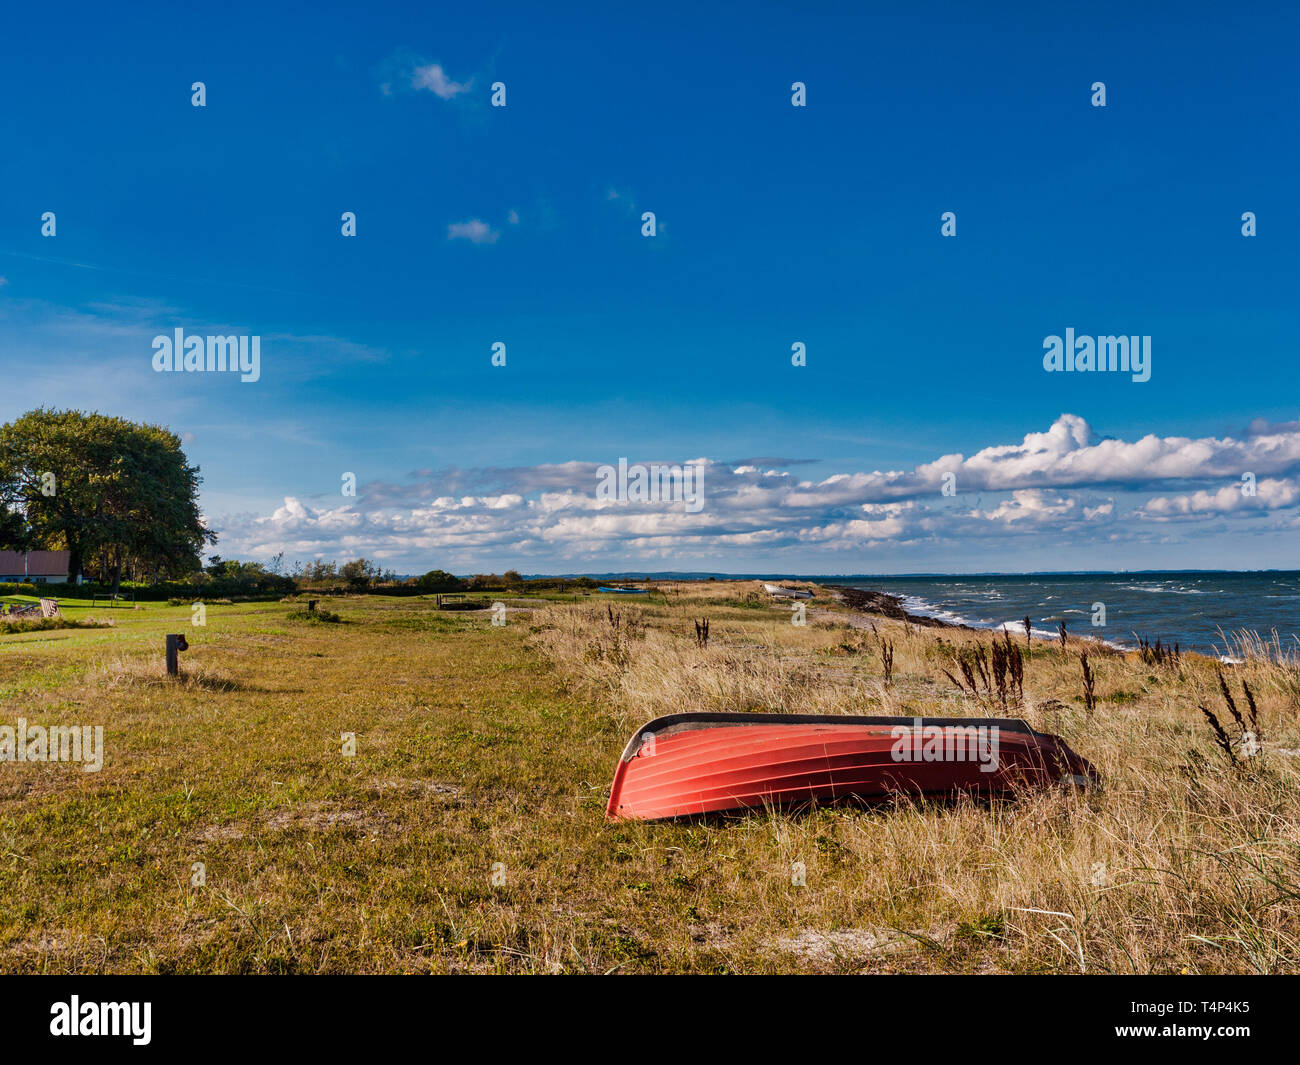 Bateau rouge est allongé sur une prairie sur la plage de la mer Baltique contre un ciel bleu avec des nuages sur l'île de Langeland, Danemark Banque D'Images